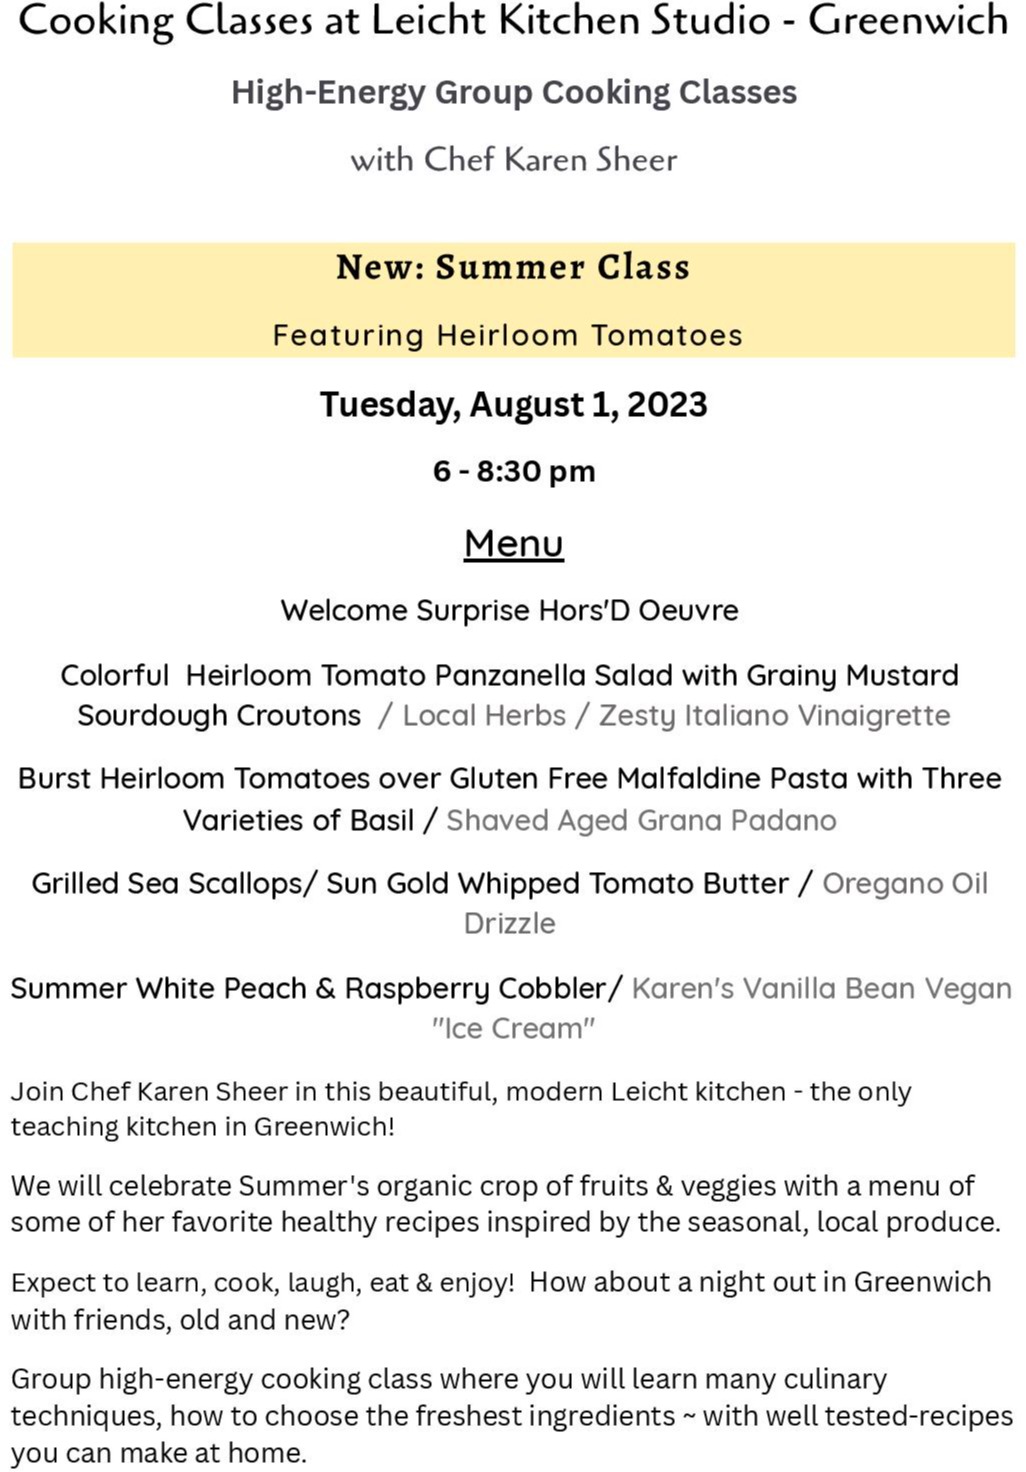 NEW Summer Cooking Class August 1, 2023 Leicht Greenwich